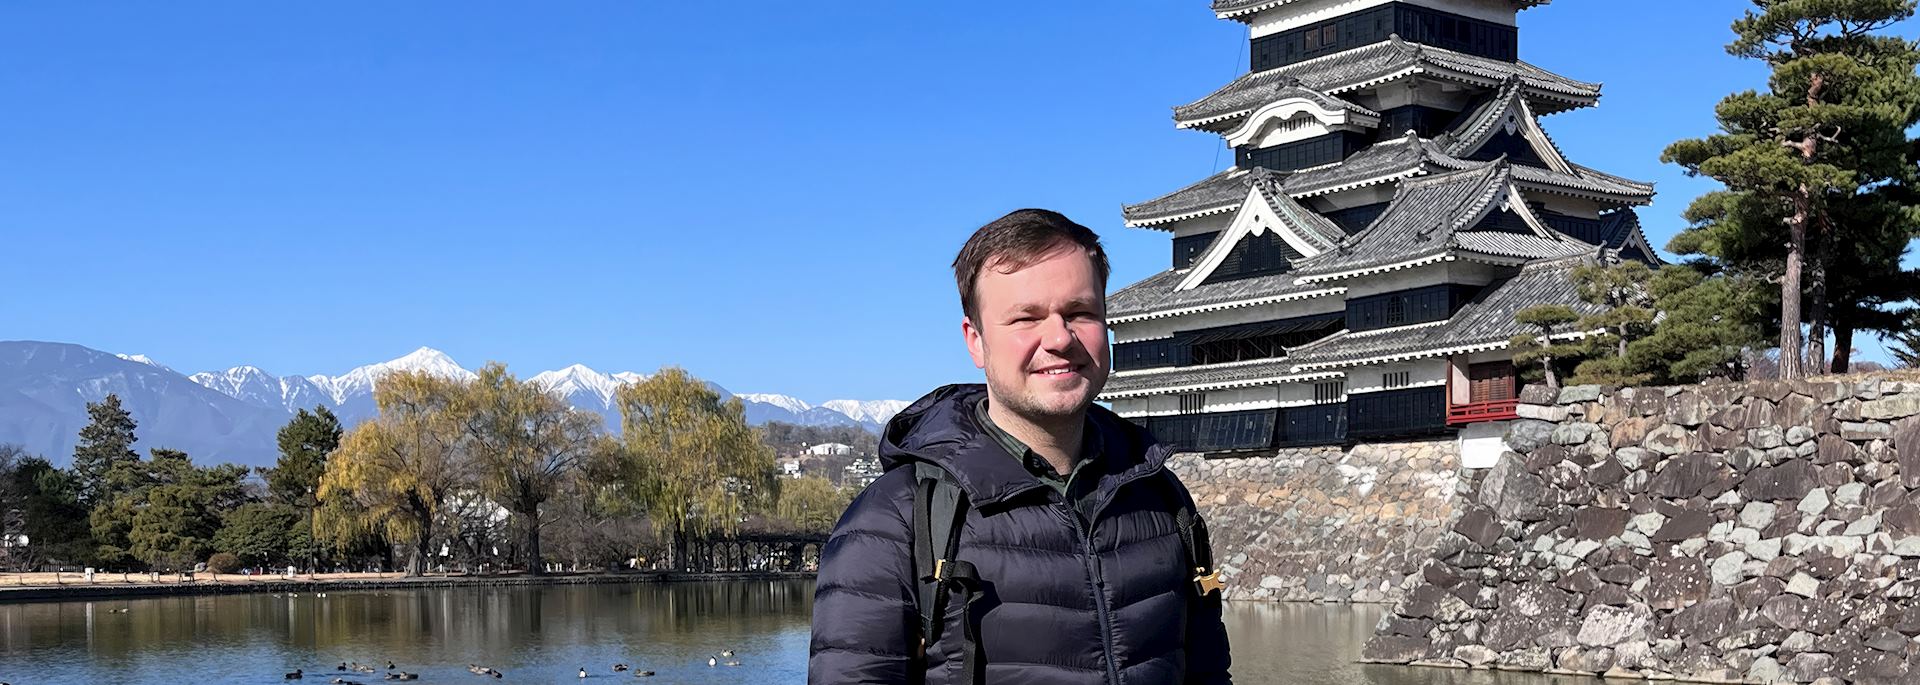 Matt visiting Japan